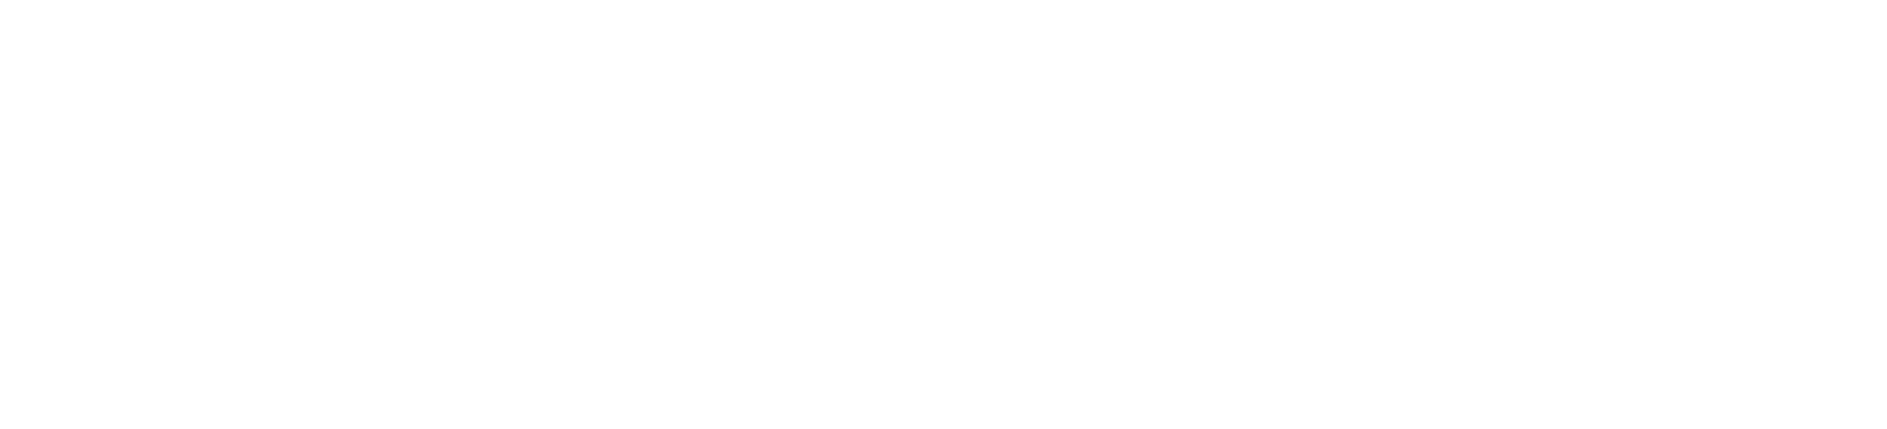 Tor Vergata - Università degli Studi di Roma